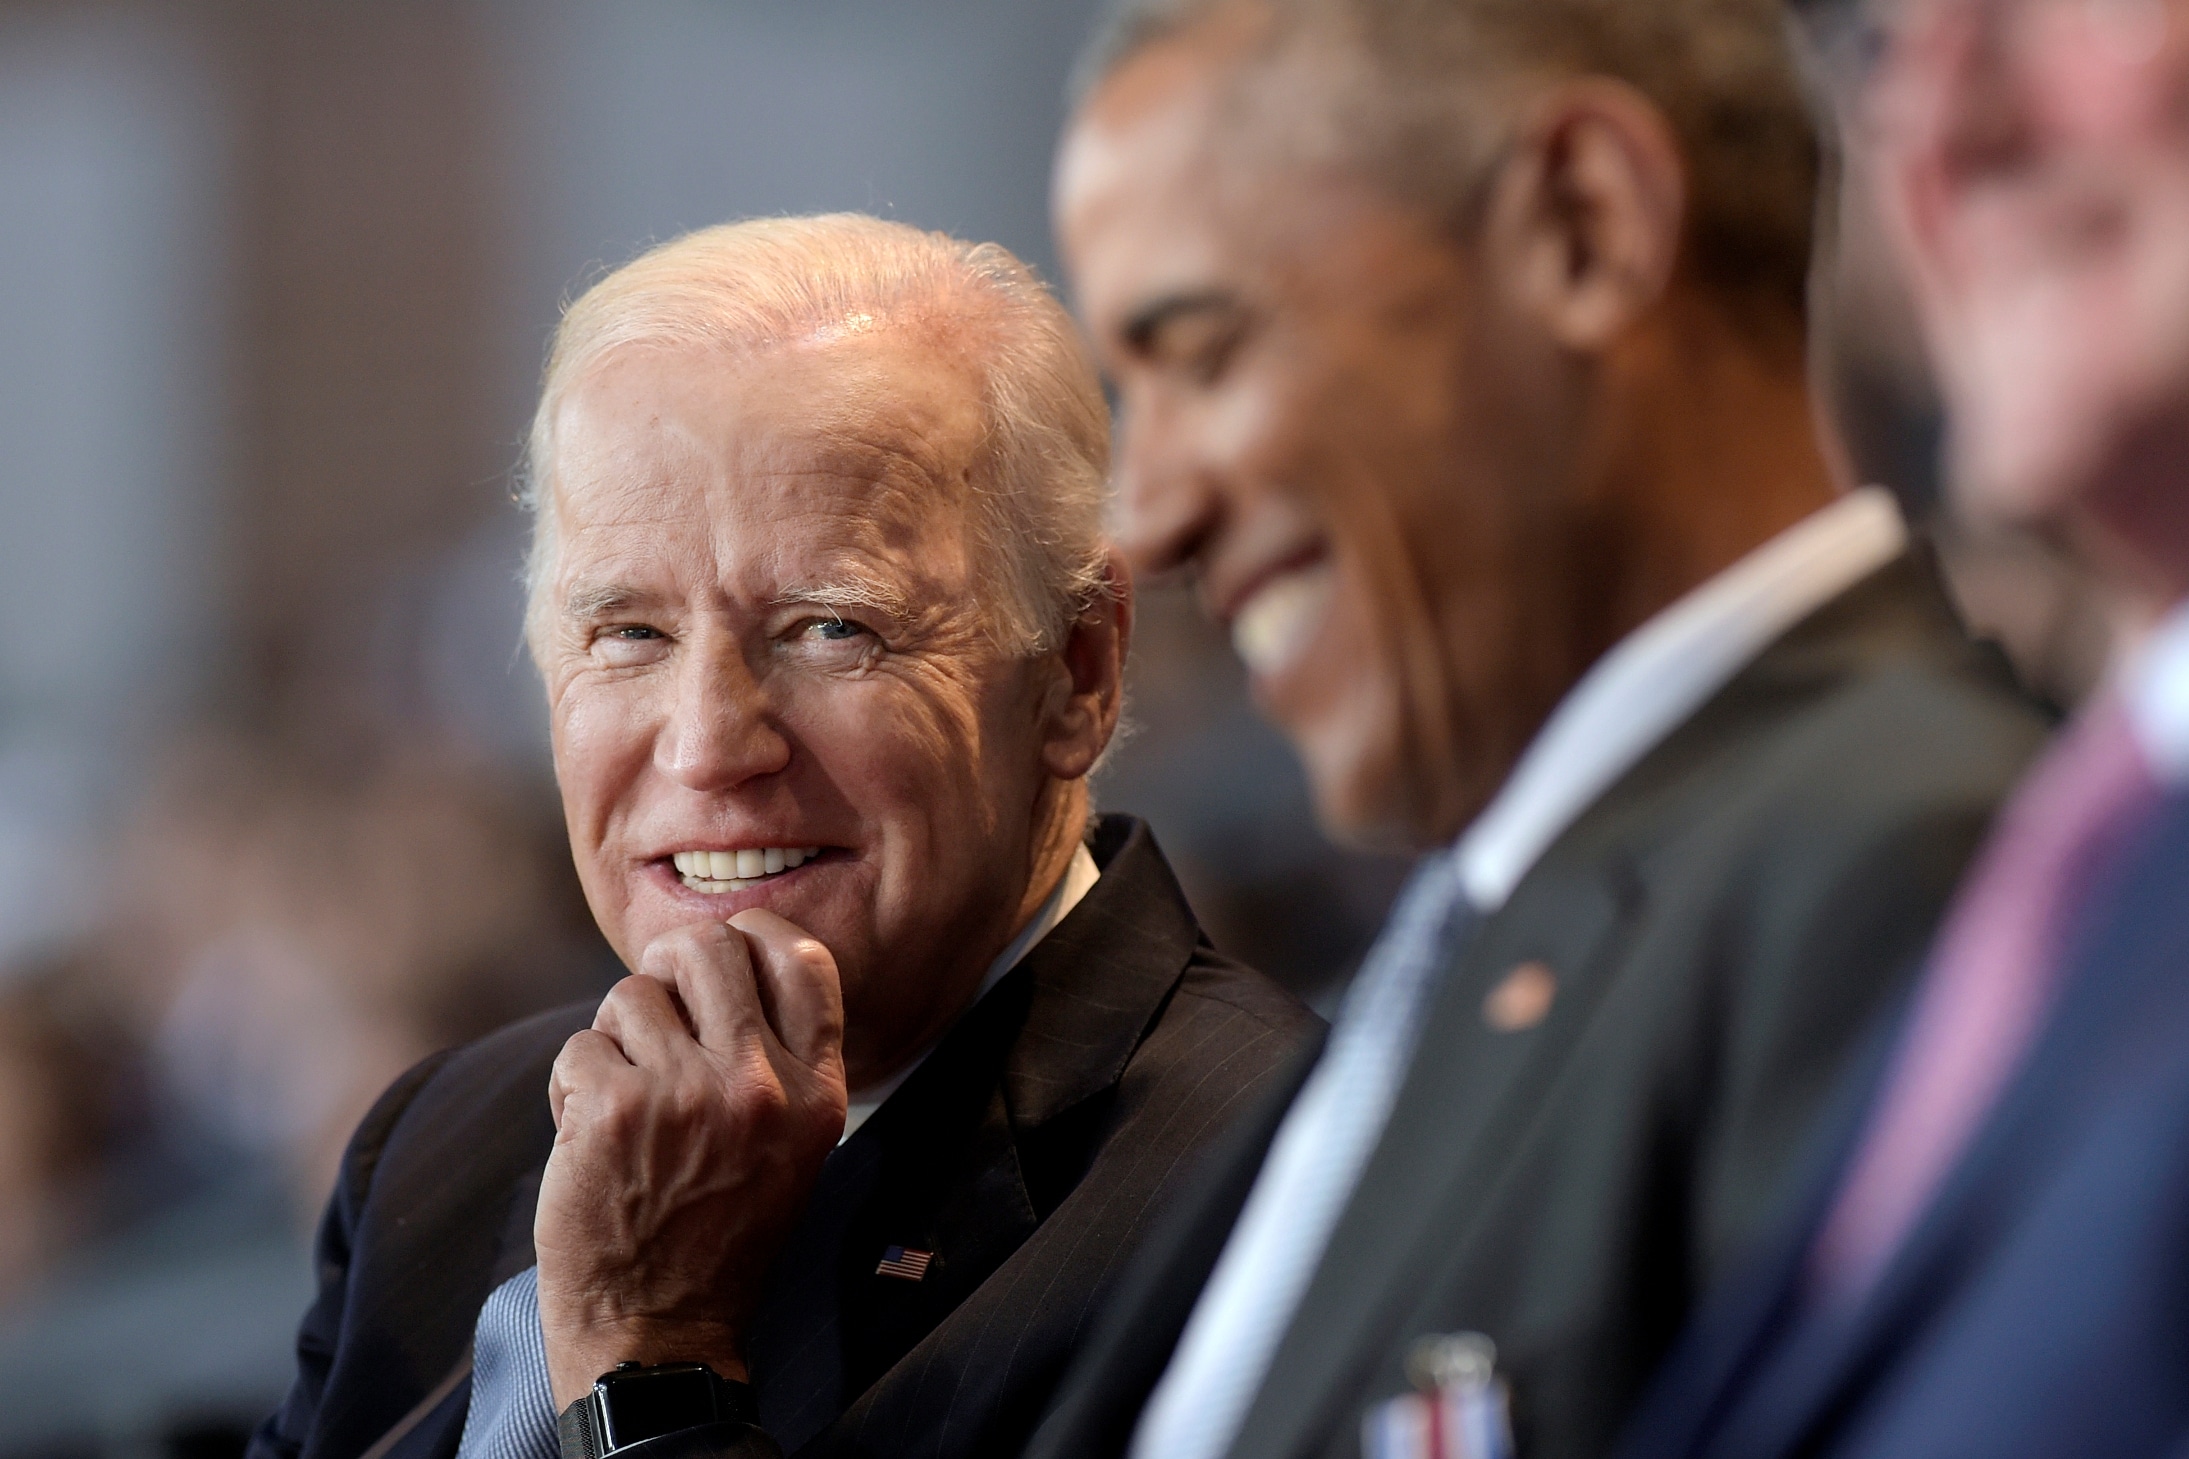 Obama Endorses Joe Biden for President